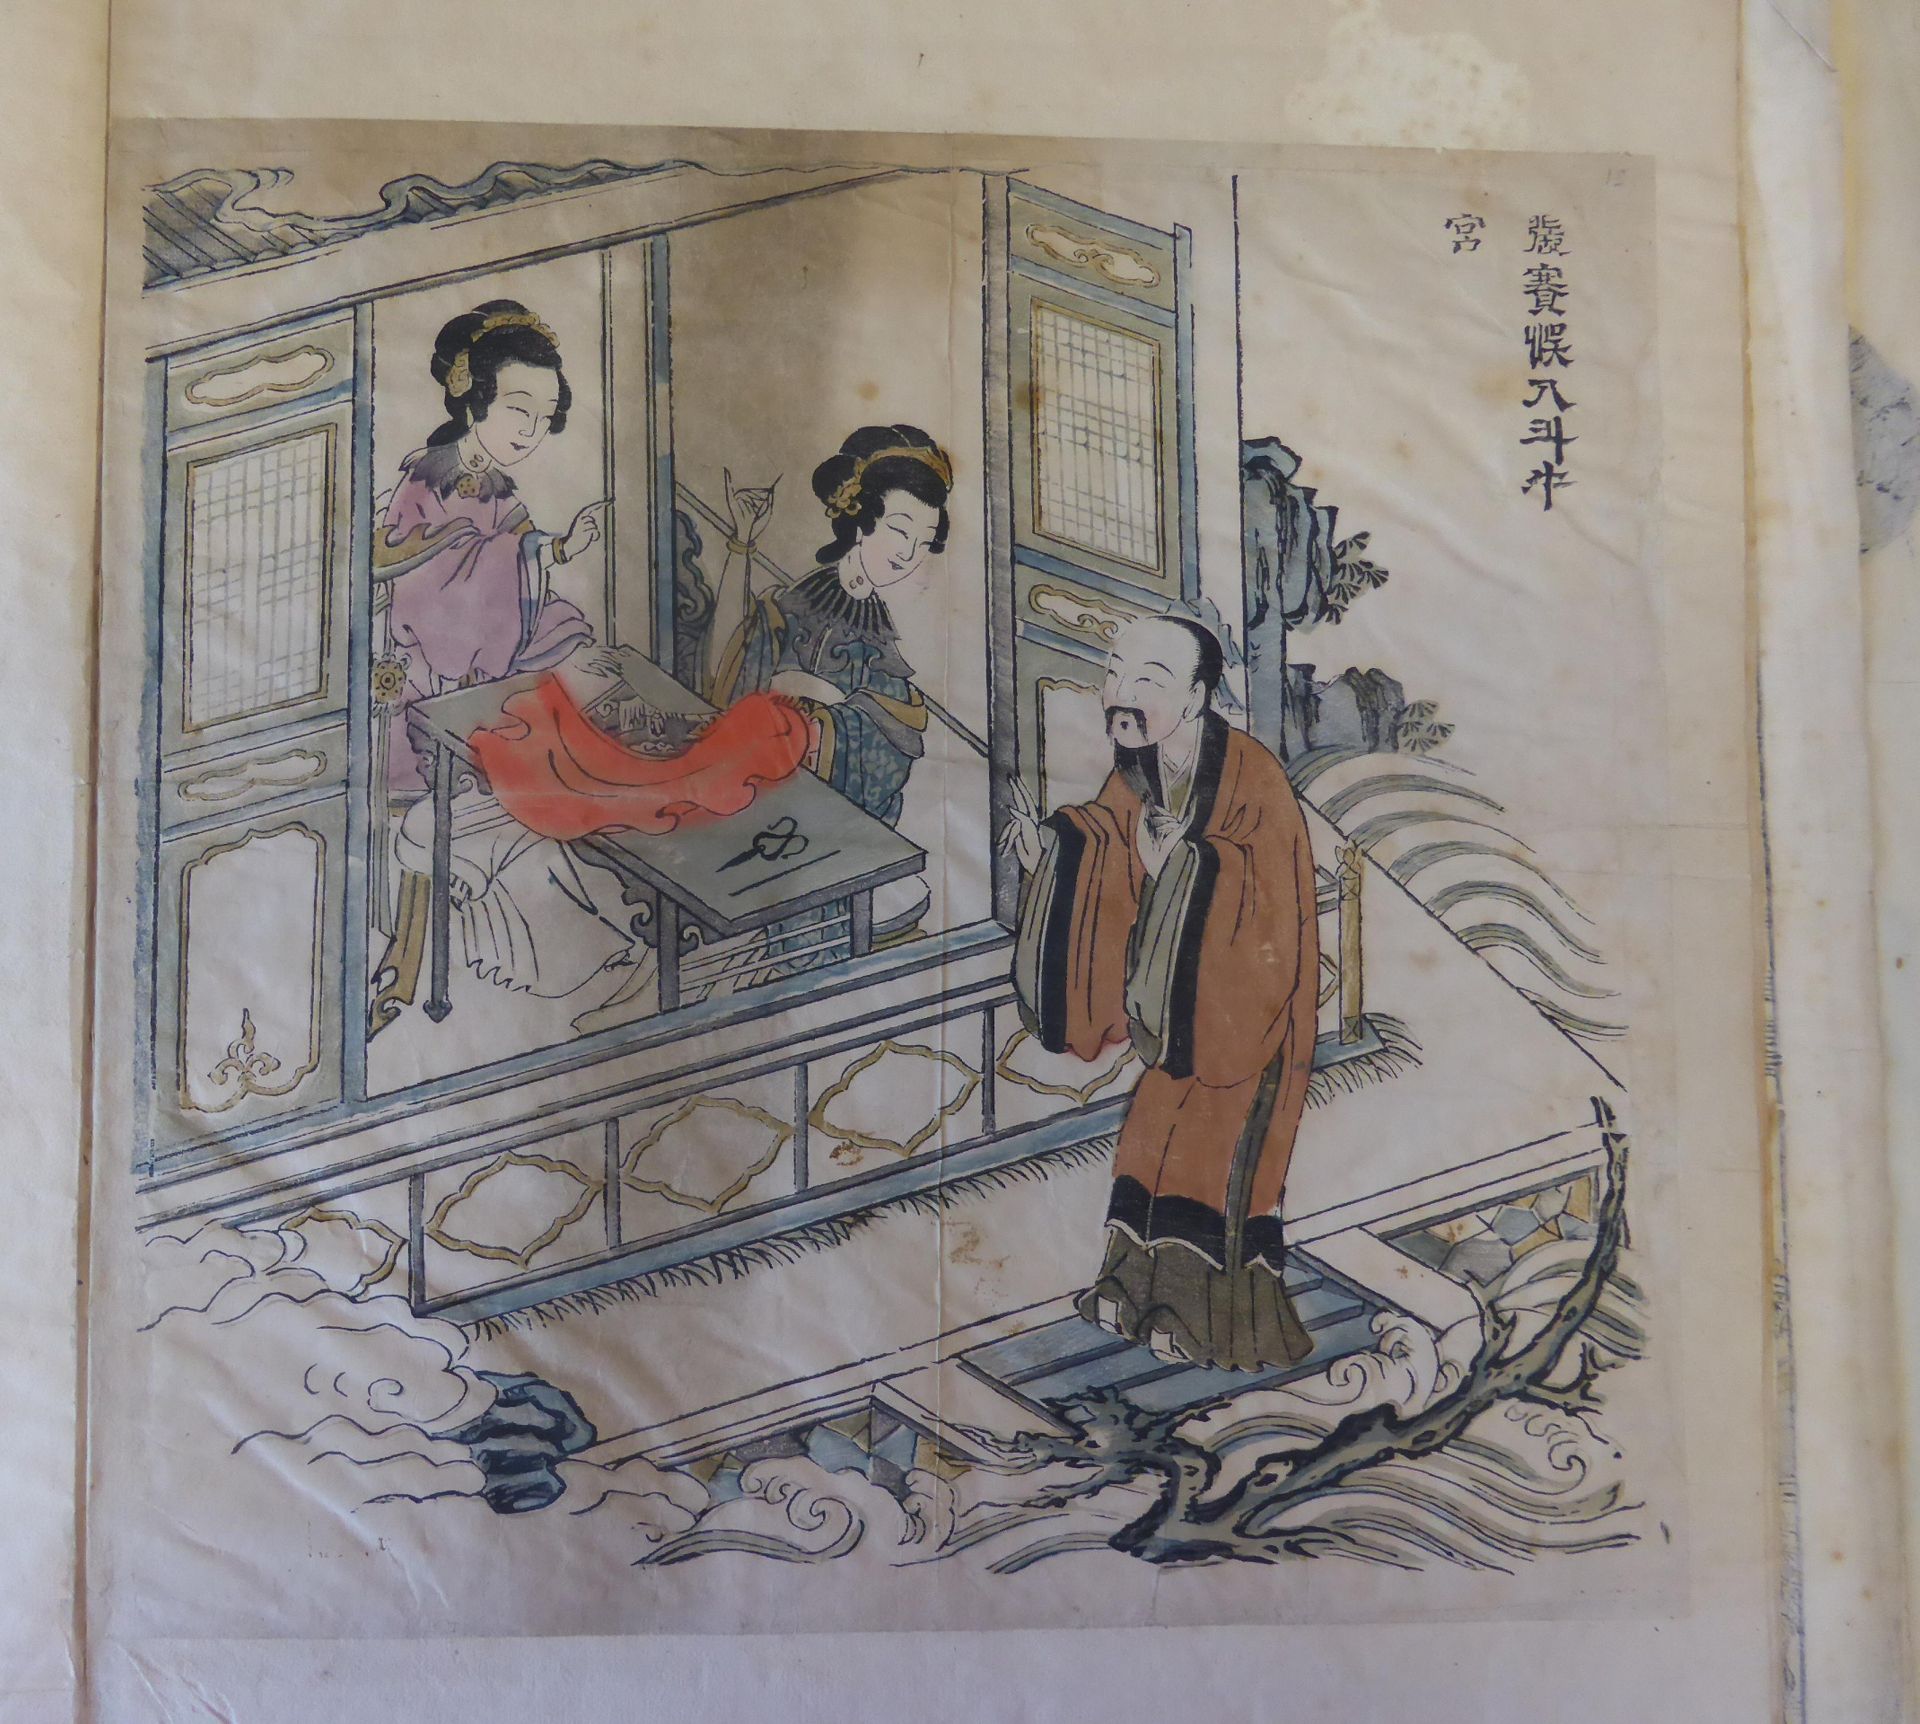 SECHS HOLZSCHNITTE IN ZWEI HEFTEN. China. Qing-Dynastie. 18. Jh. Farbholzschnitte mit bis zu - Image 4 of 5